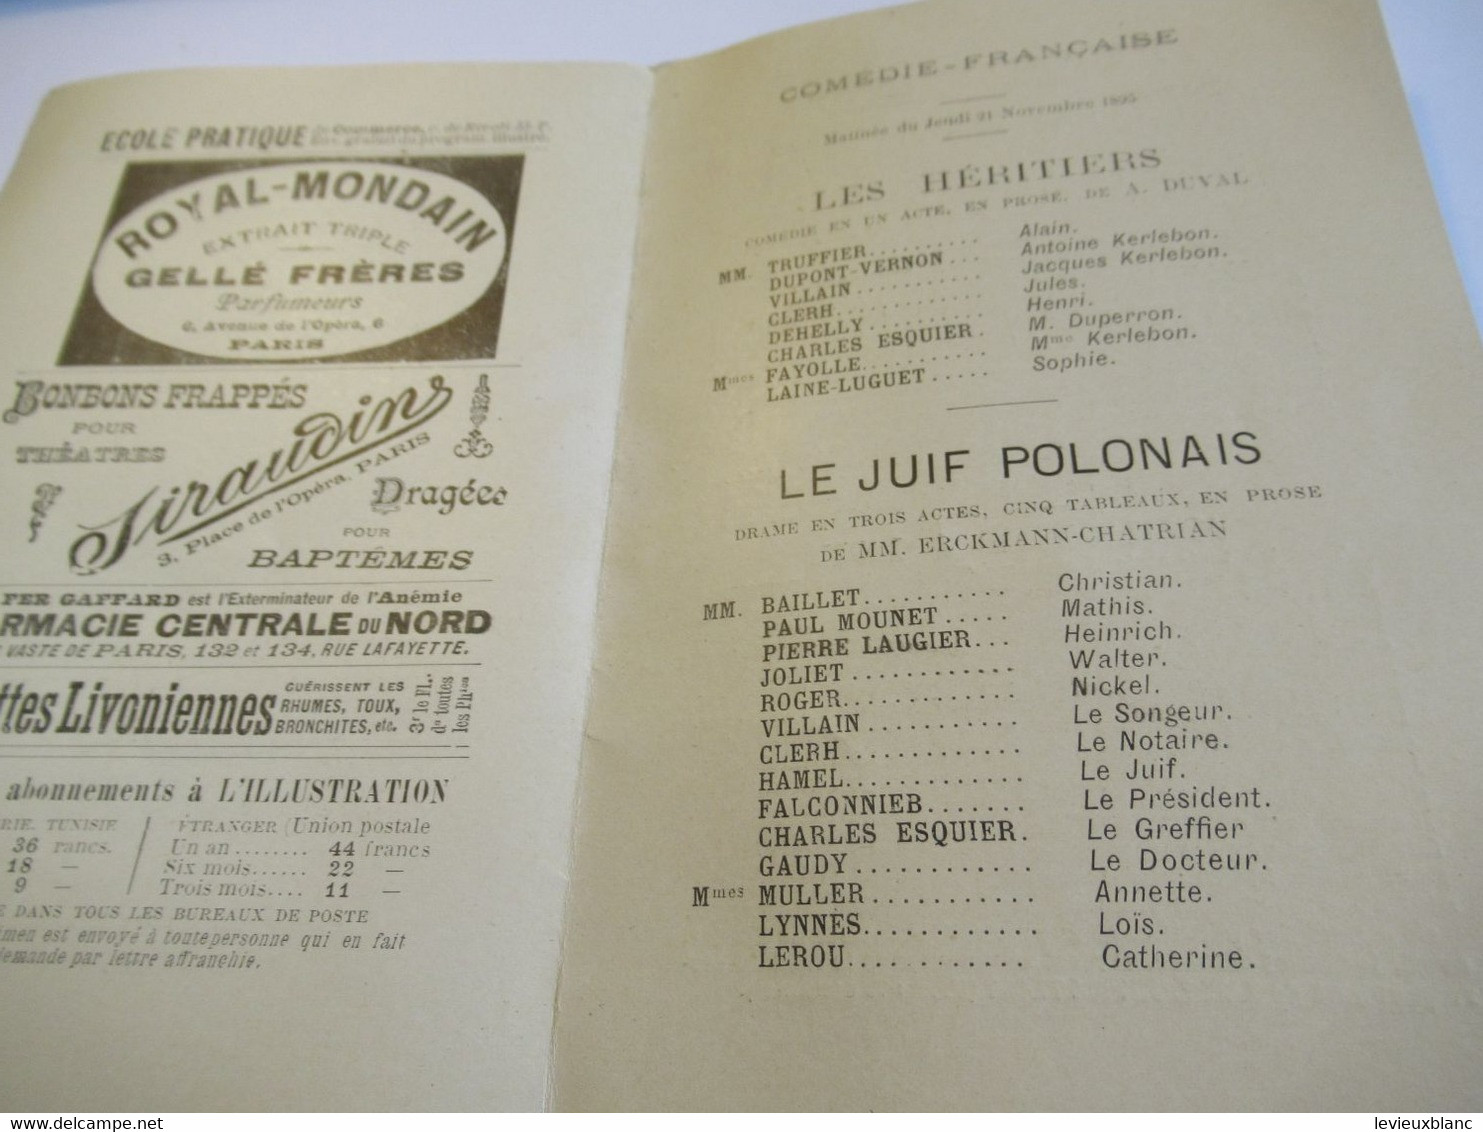 Petit Programme 2 Volets/Comédie Française/Jean-Paul MOUNET/Les Héritiers/ Le Juif Polonais/ L'Illustration/1895 COFIL3 - Programma's